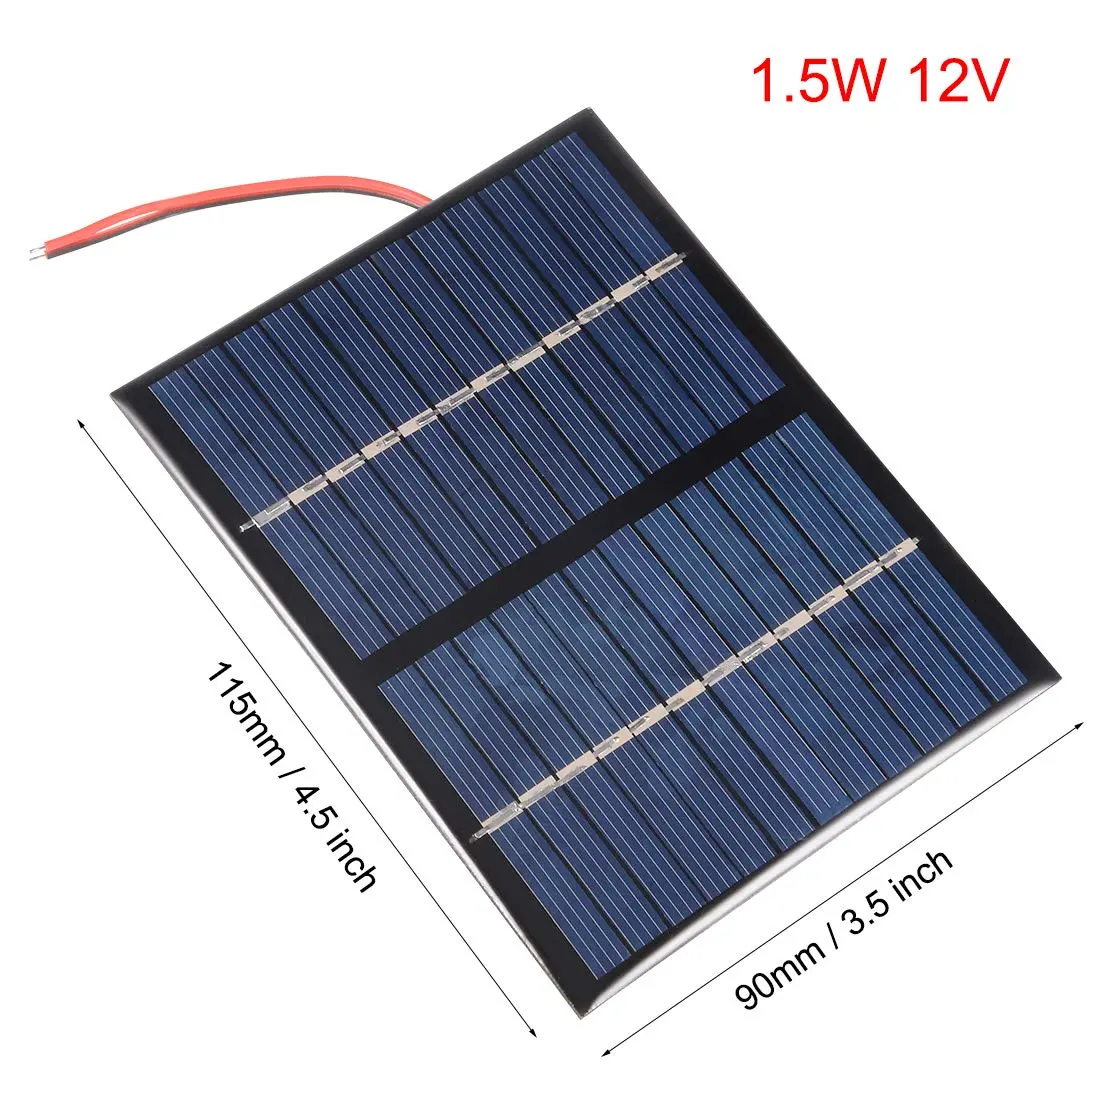 Pantalla solar 12v: carga eficiente para baterías